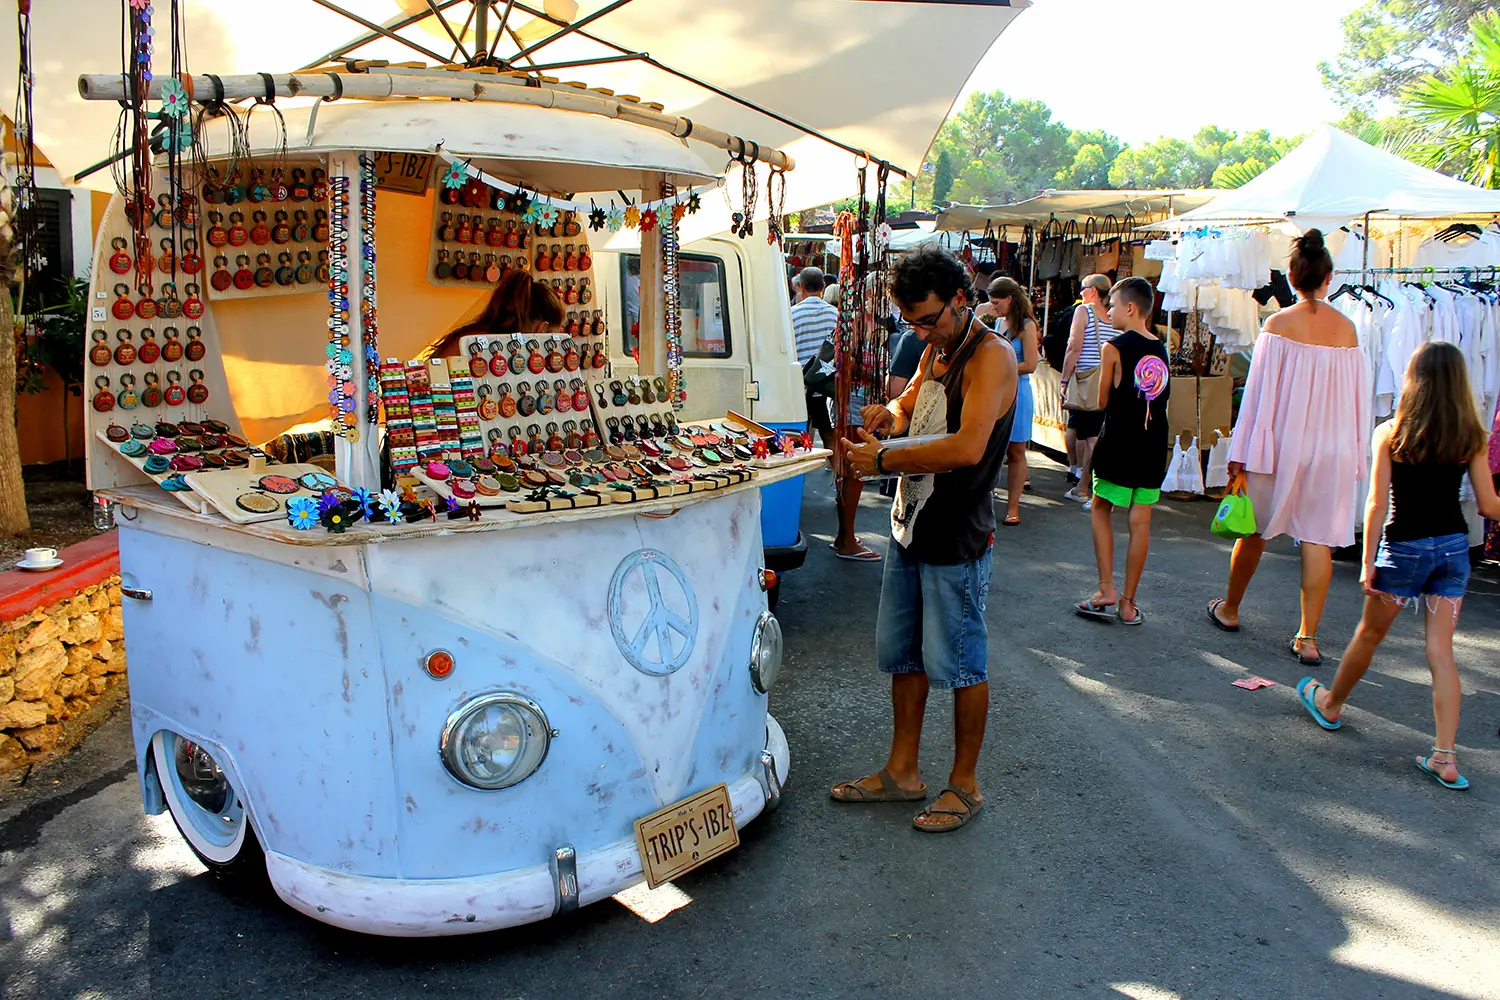 Hippy market on Ibiza, Spain